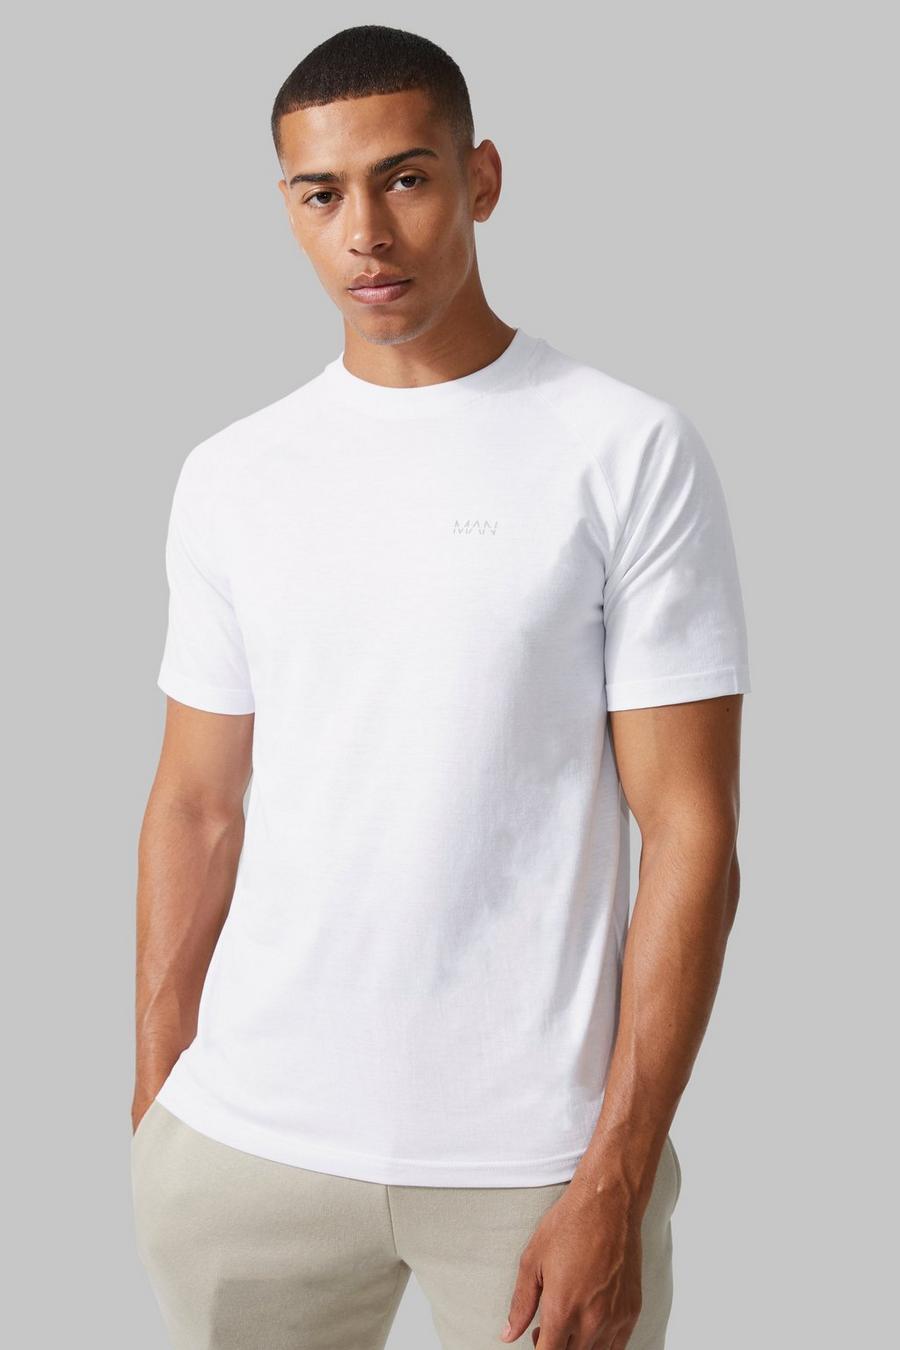 White Man Active Gym Raglan T-shirt image number 1